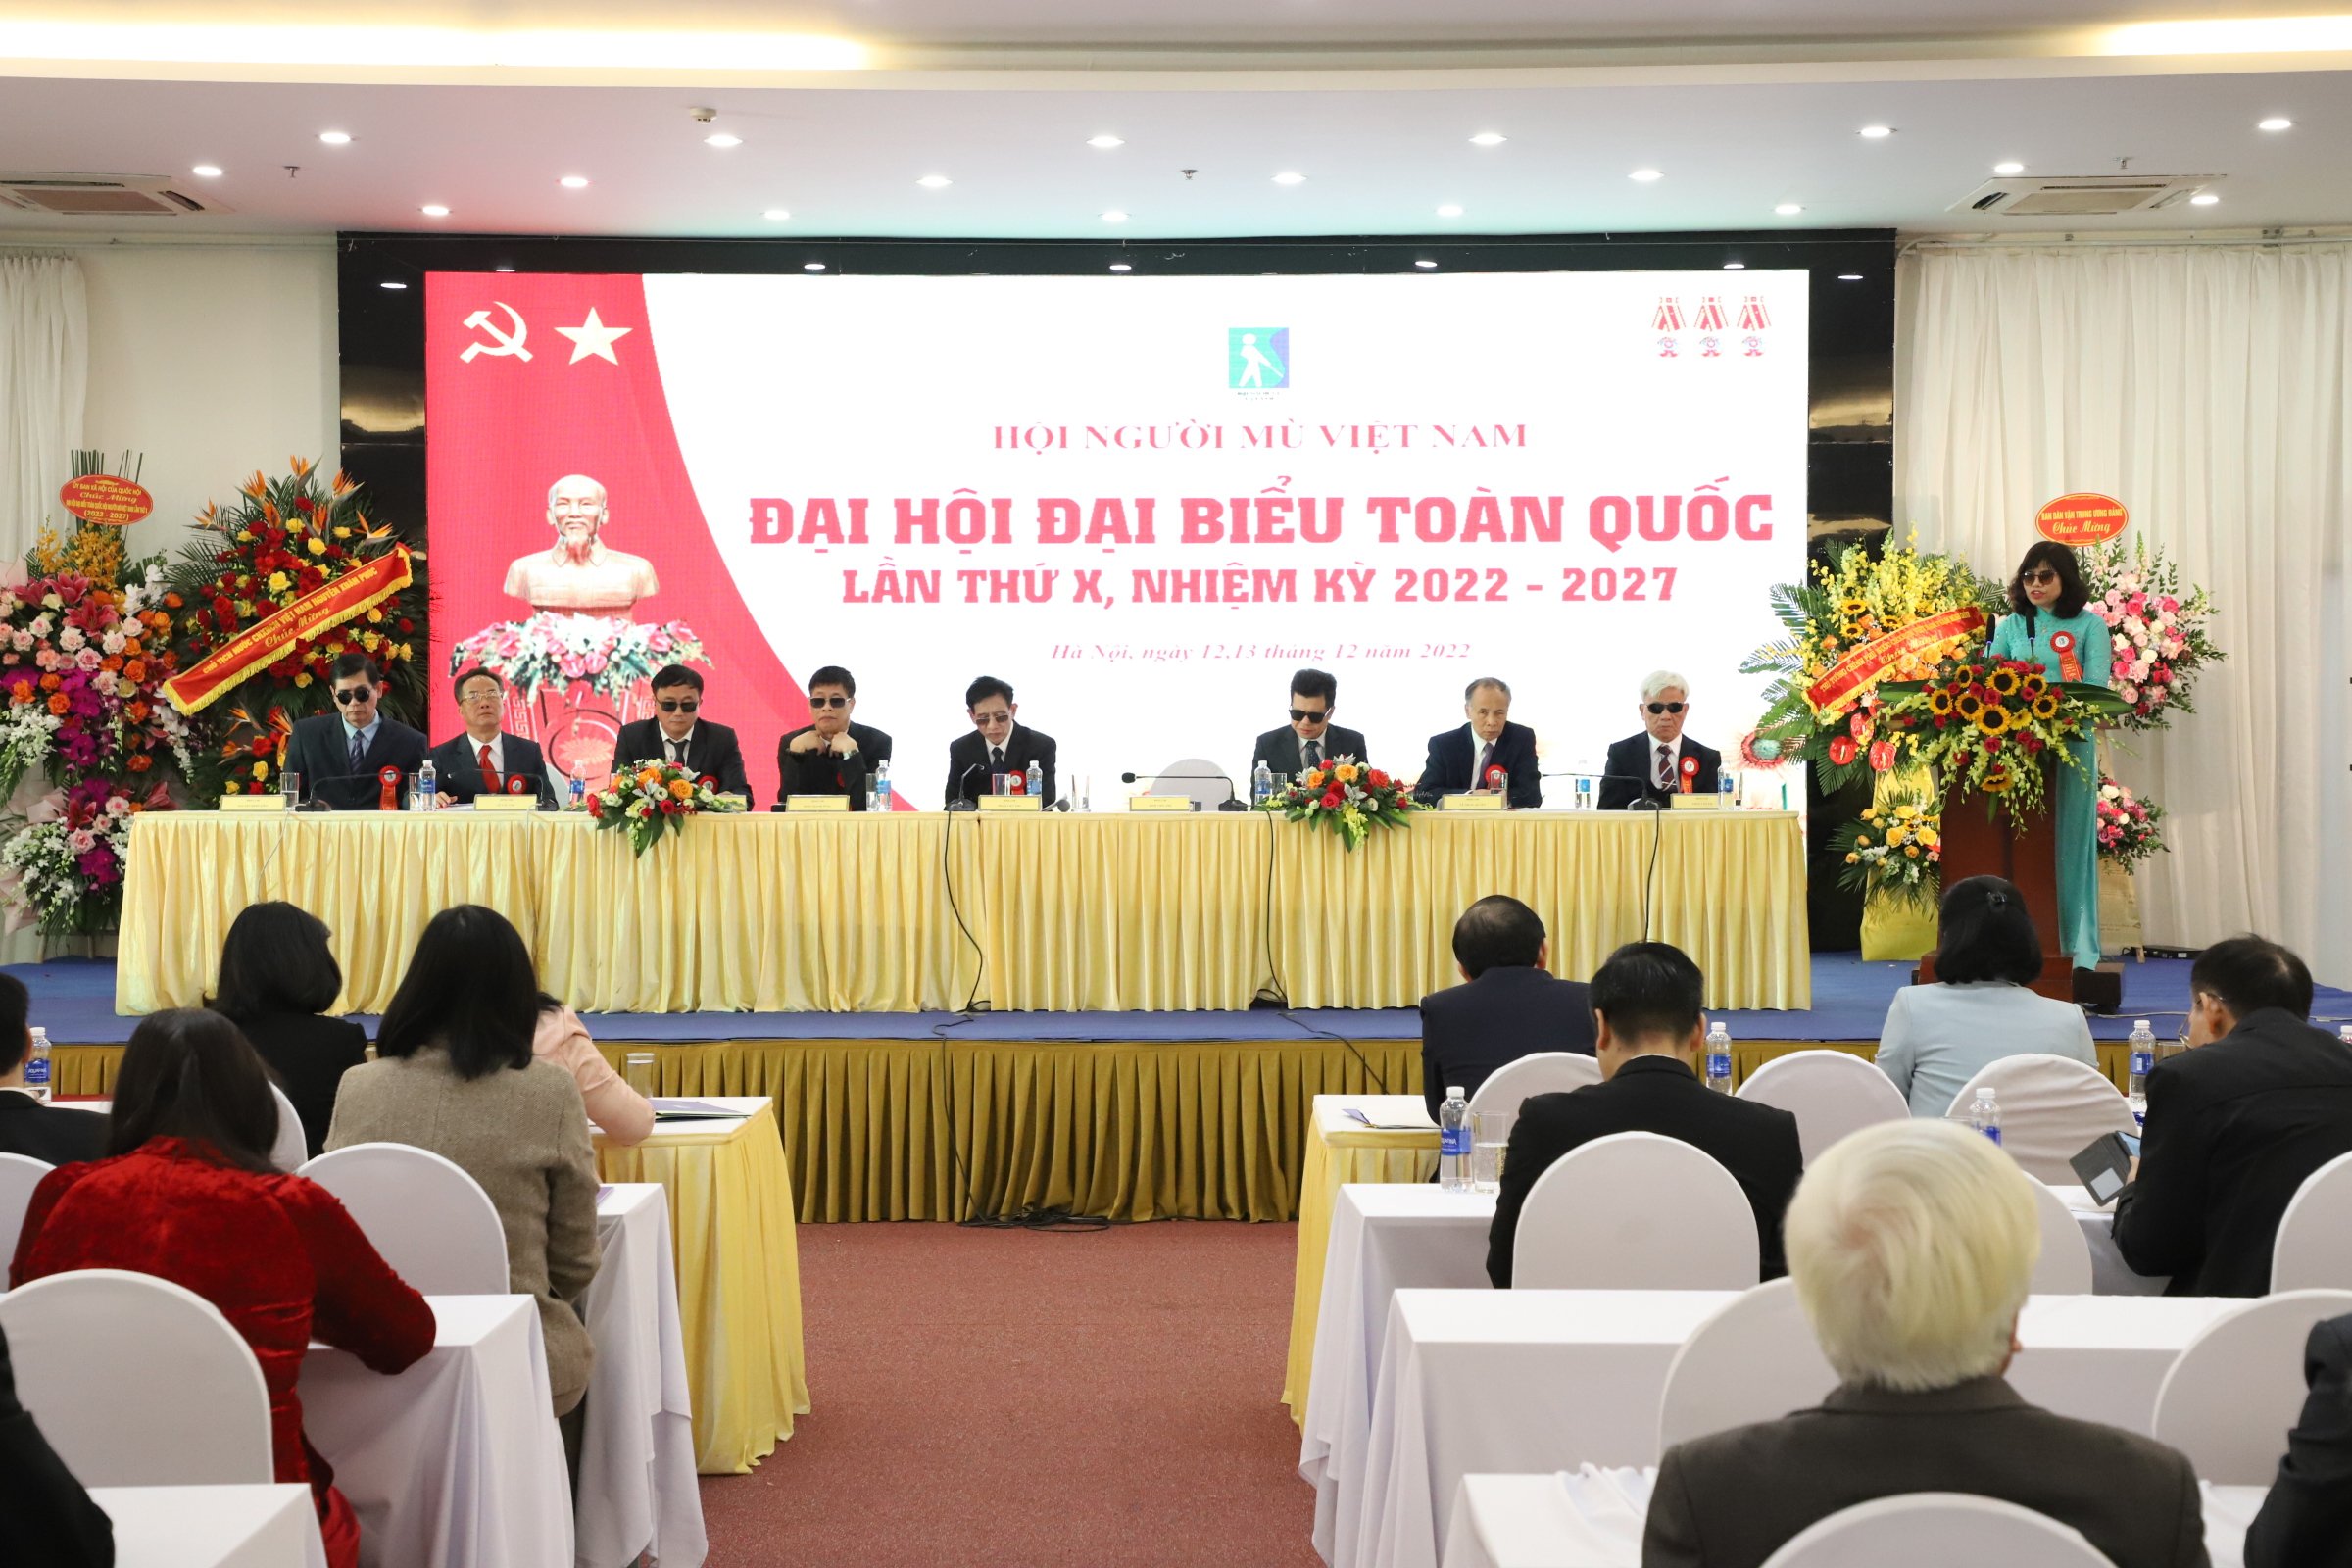 Đại hội Đại biểu toàn quốc Hội Người mù Việt Nam lần thứ X nhiệm kỳ 2022-2027